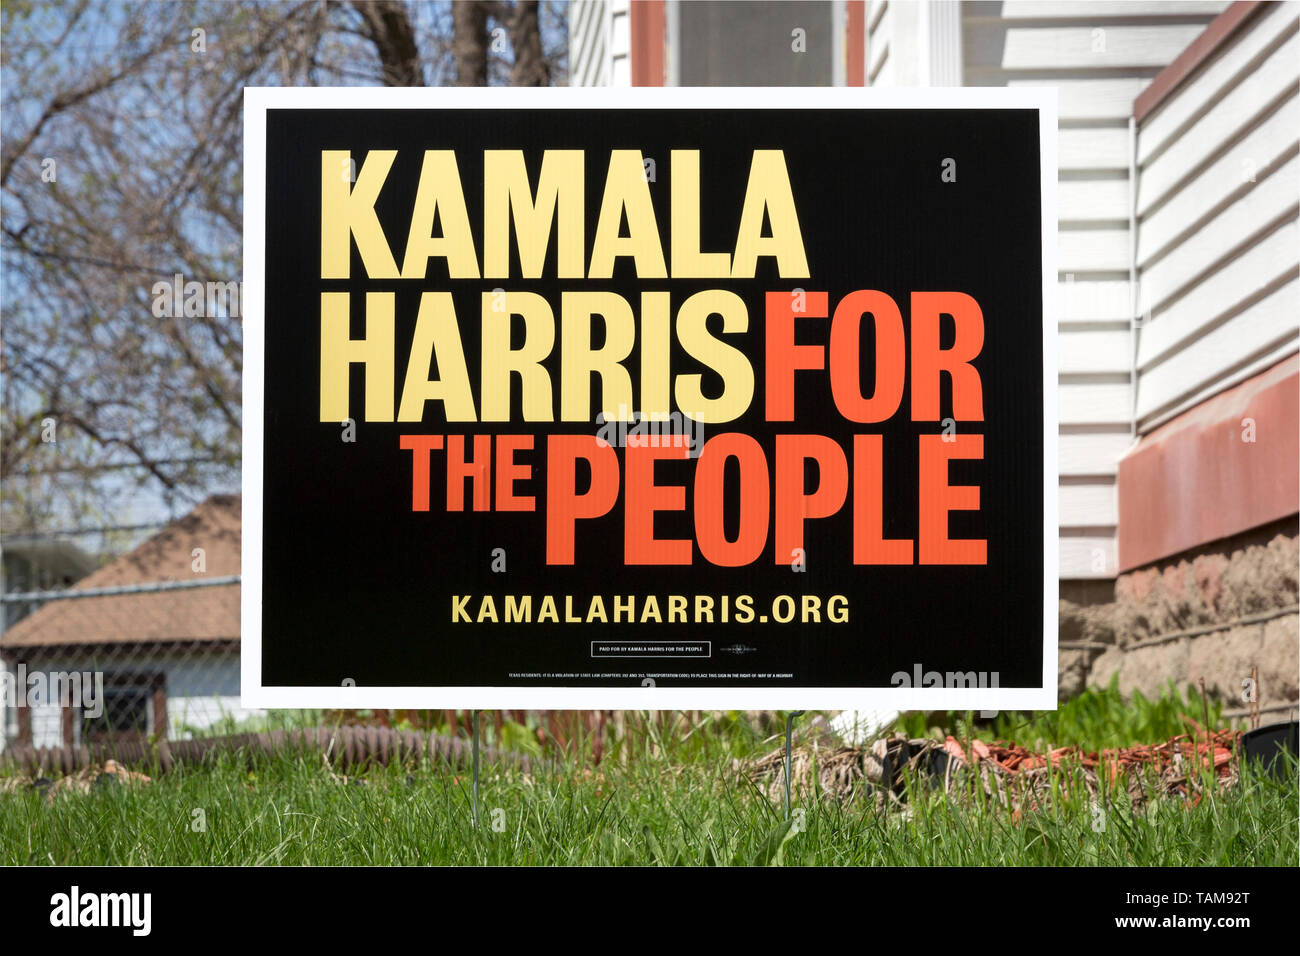 Segno di cantiere per il candidato presidenziale democratico Kamala Harris a Minneapolis, Minnesota. Il segno membri Kamala Harris per il popolo. Foto Stock